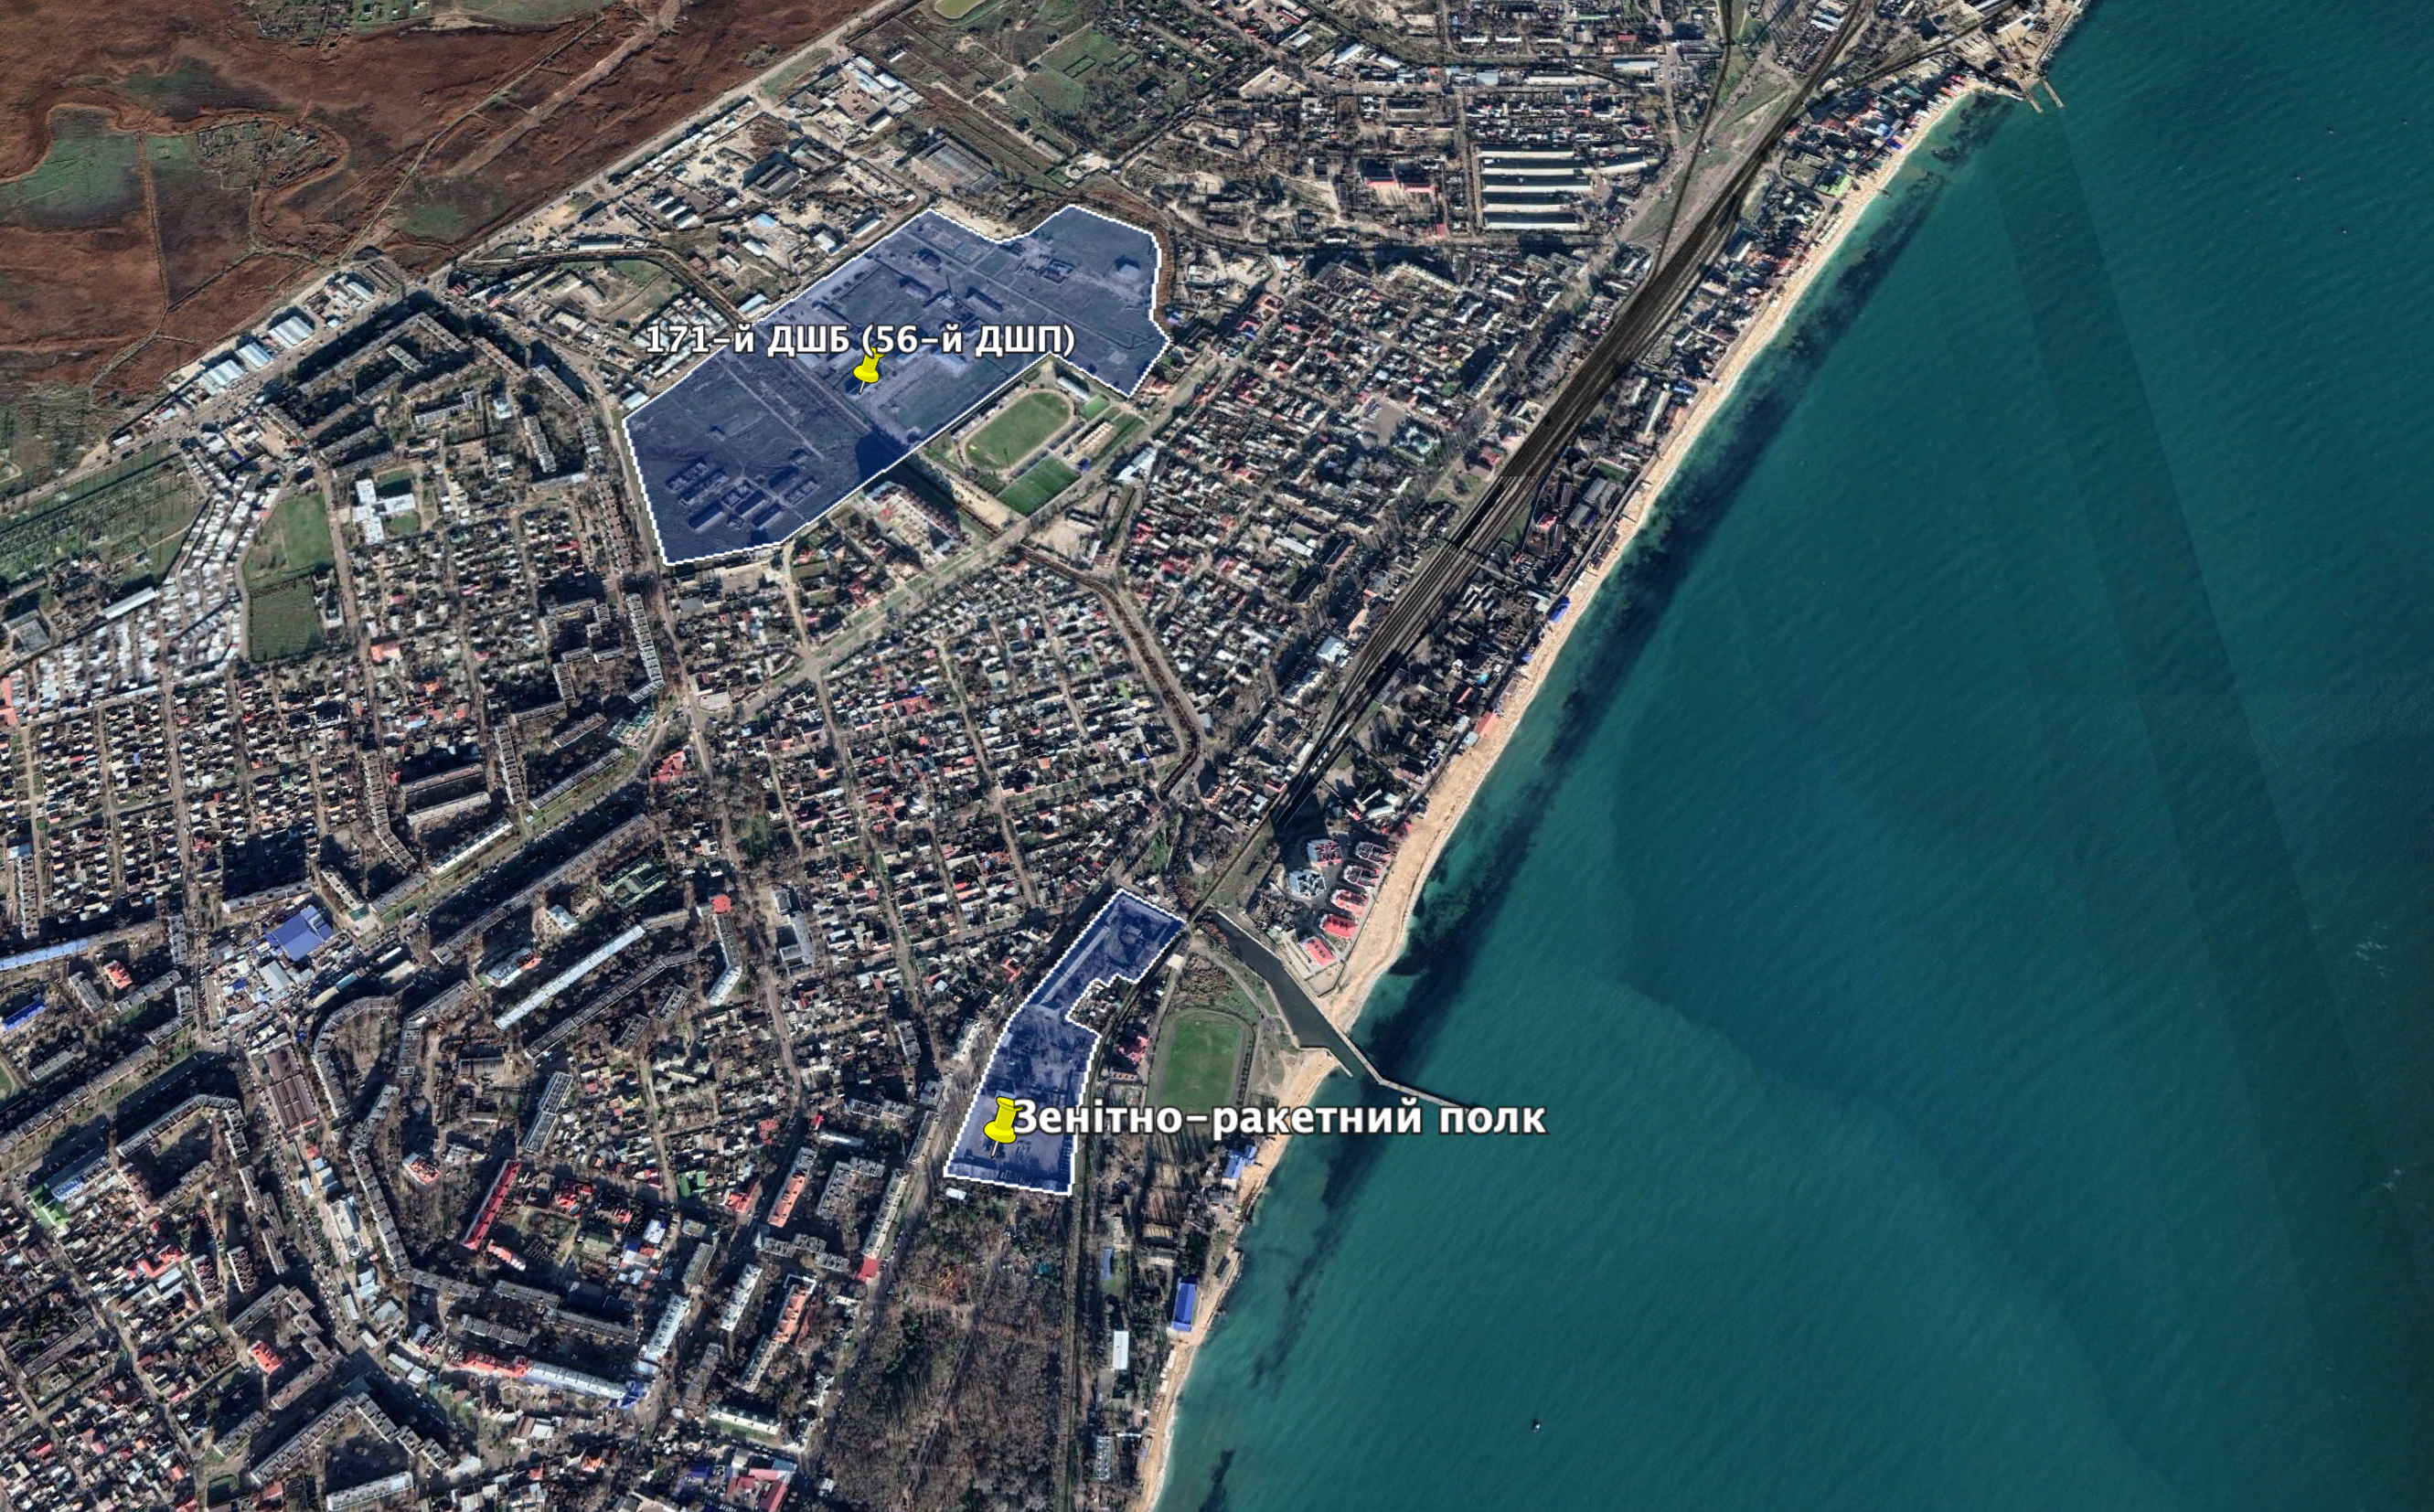 56-й ДШП і 18-й ЗРП на карті Феодосії Фото: Google Earth